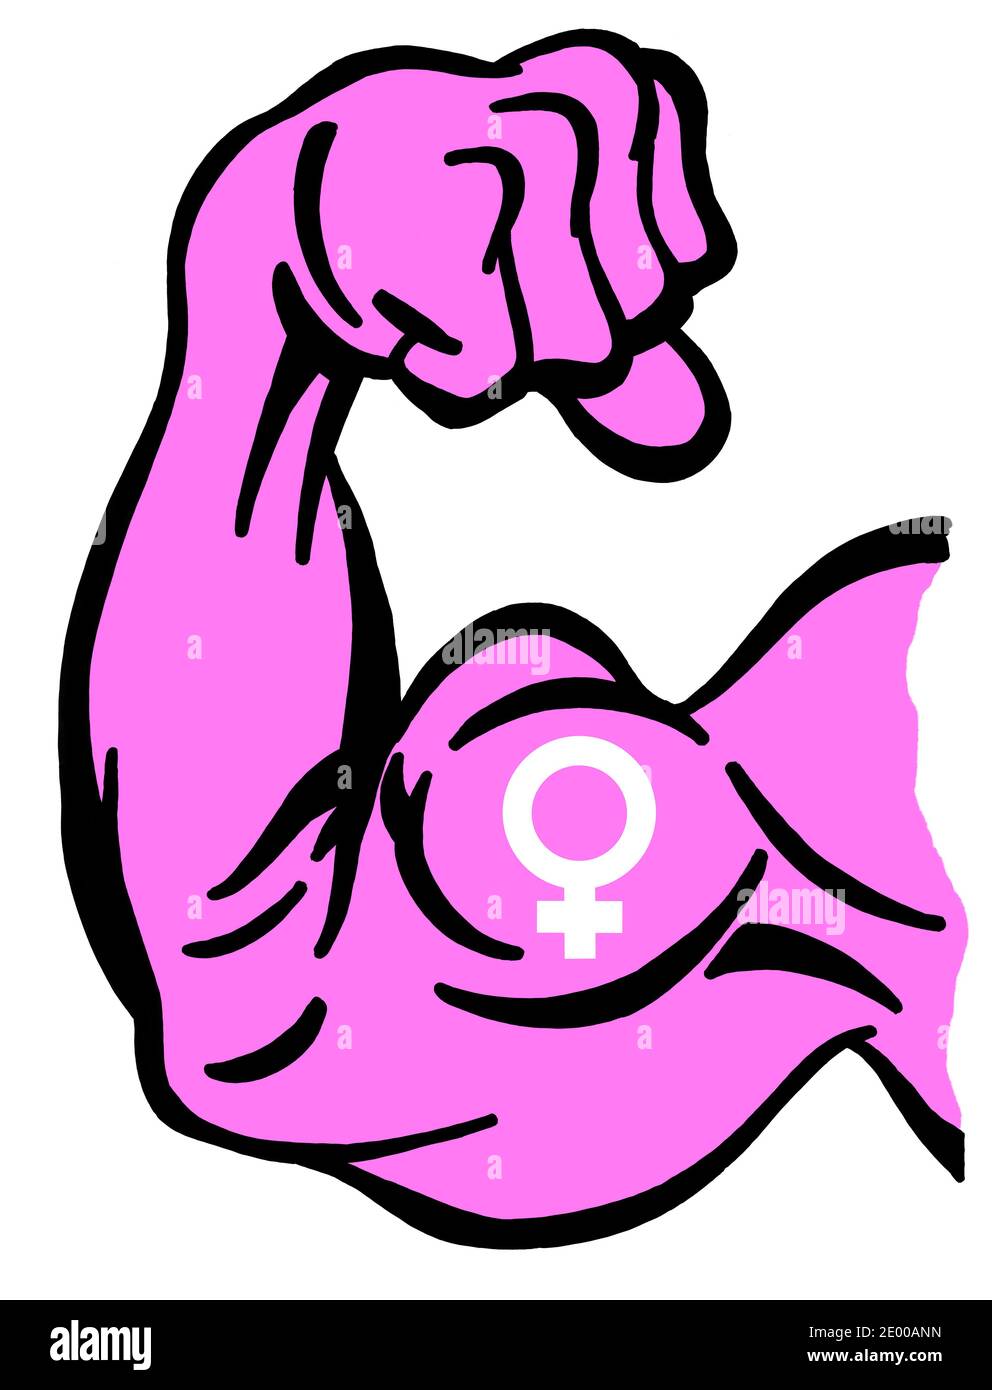 Biceps peint de couleur rose et symbole femelle comme métaphore du mouvement féministe et des femmes fortes Banque D'Images